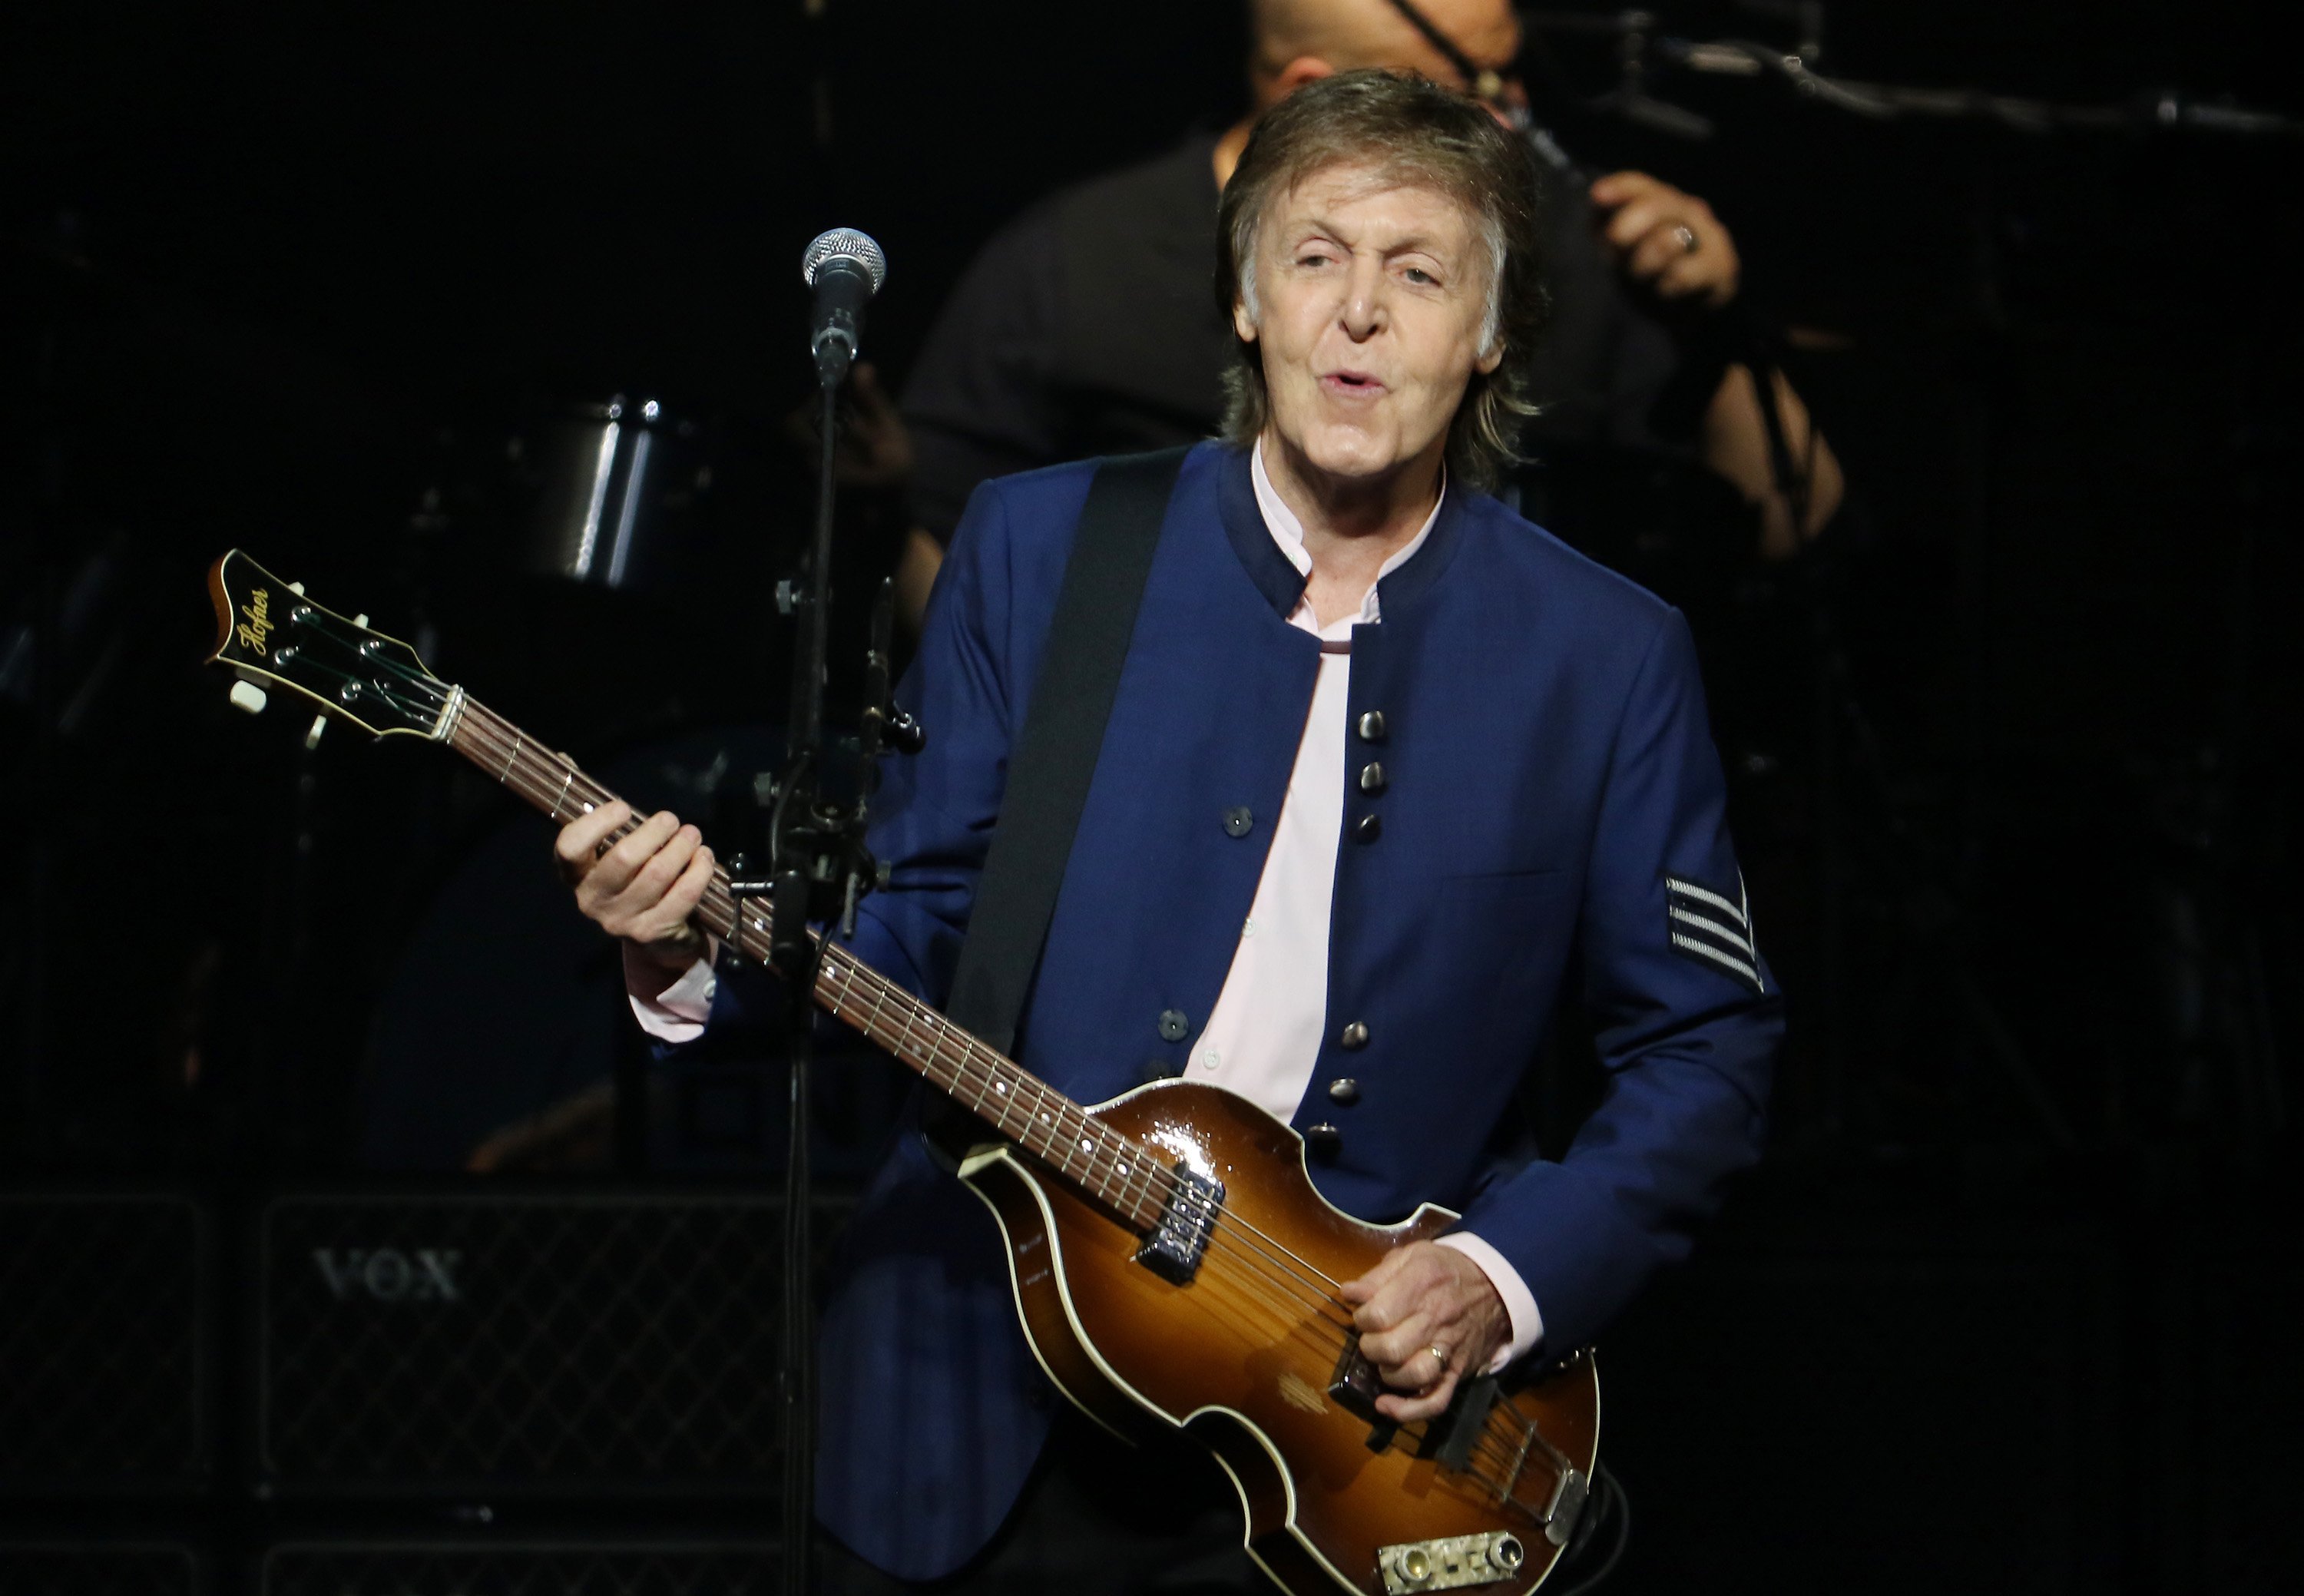 5 Best Uses of Paul McCartney Songs in Movies